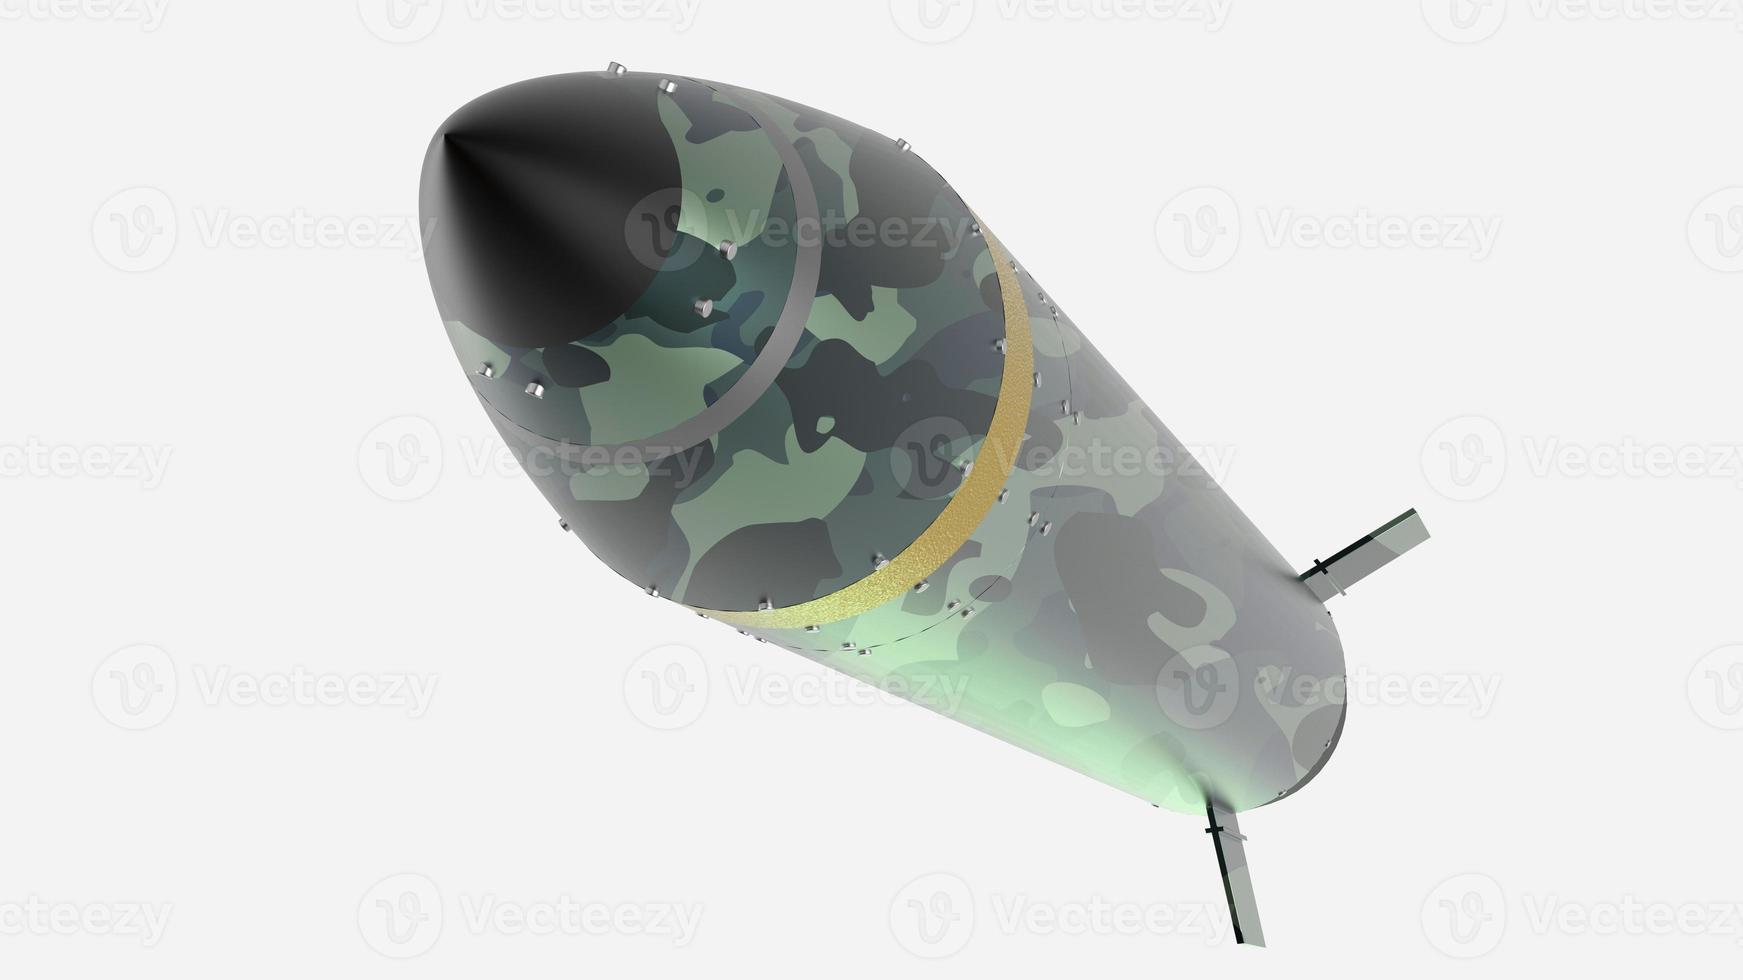 foguete míssil guerra conflito munição ogiva nuclear arma militar nuclear ilustração 3d nave espacial foto